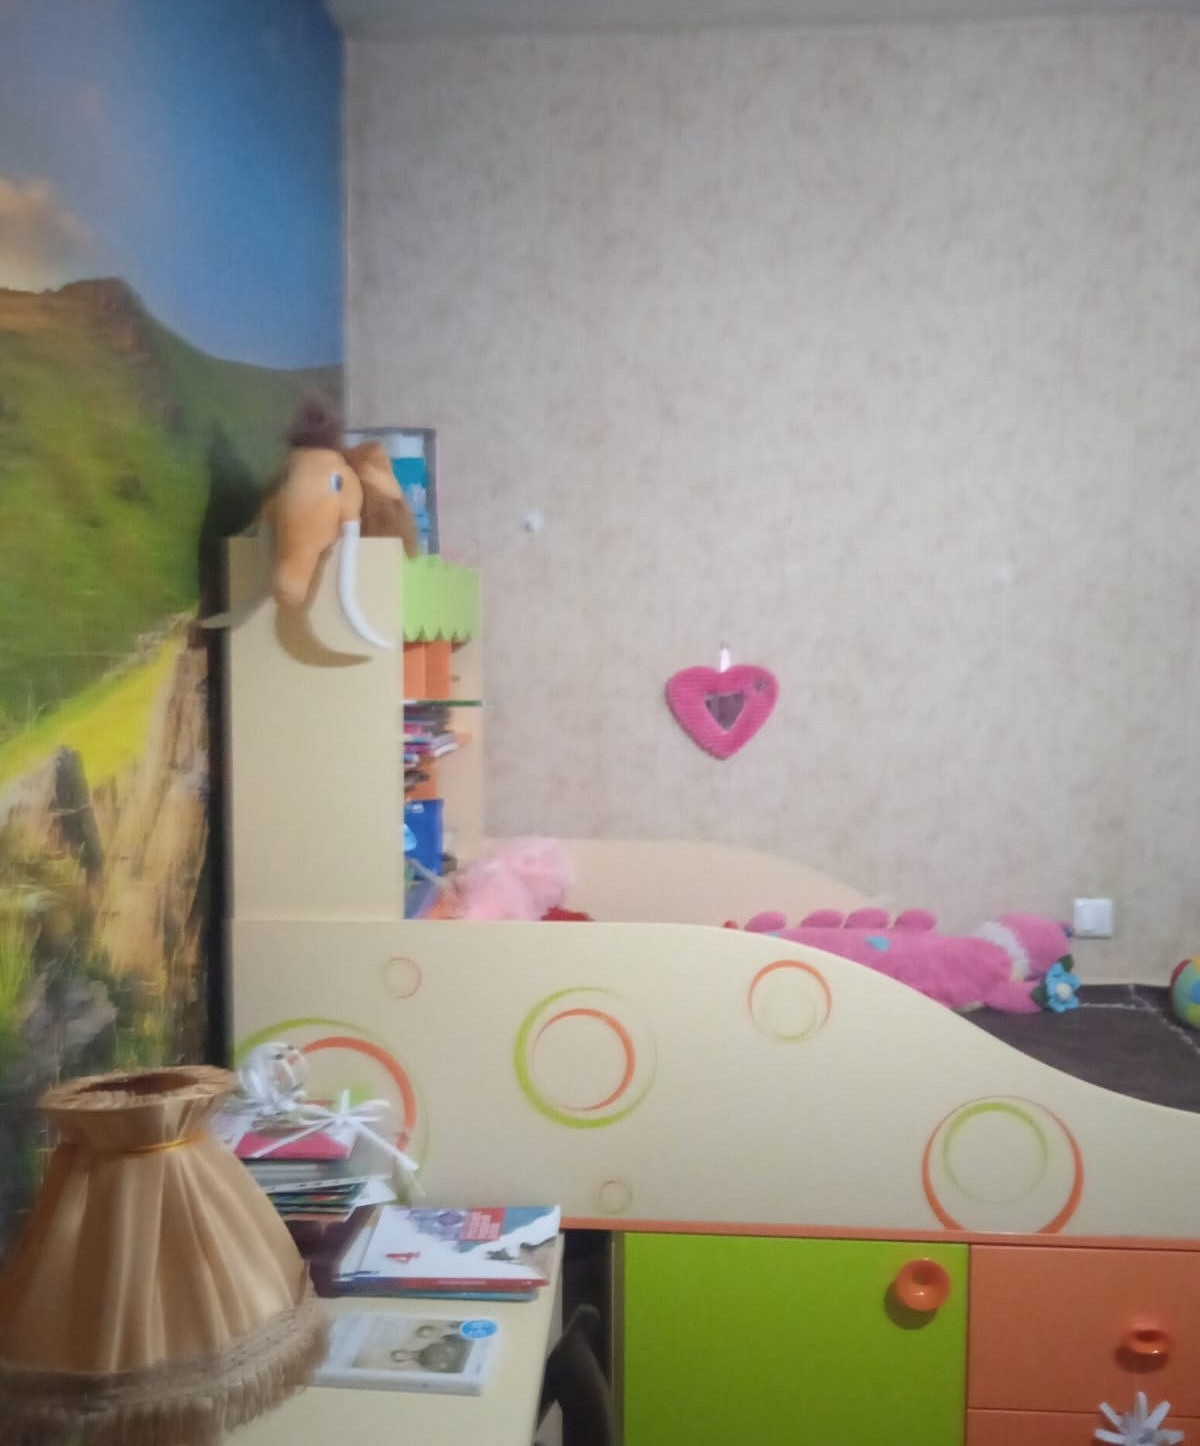 Четыре комнаты для семьи с двумя детьми. Как дизайнеры переделали квартиру с ремонтом 2000-х? Фото до и после40